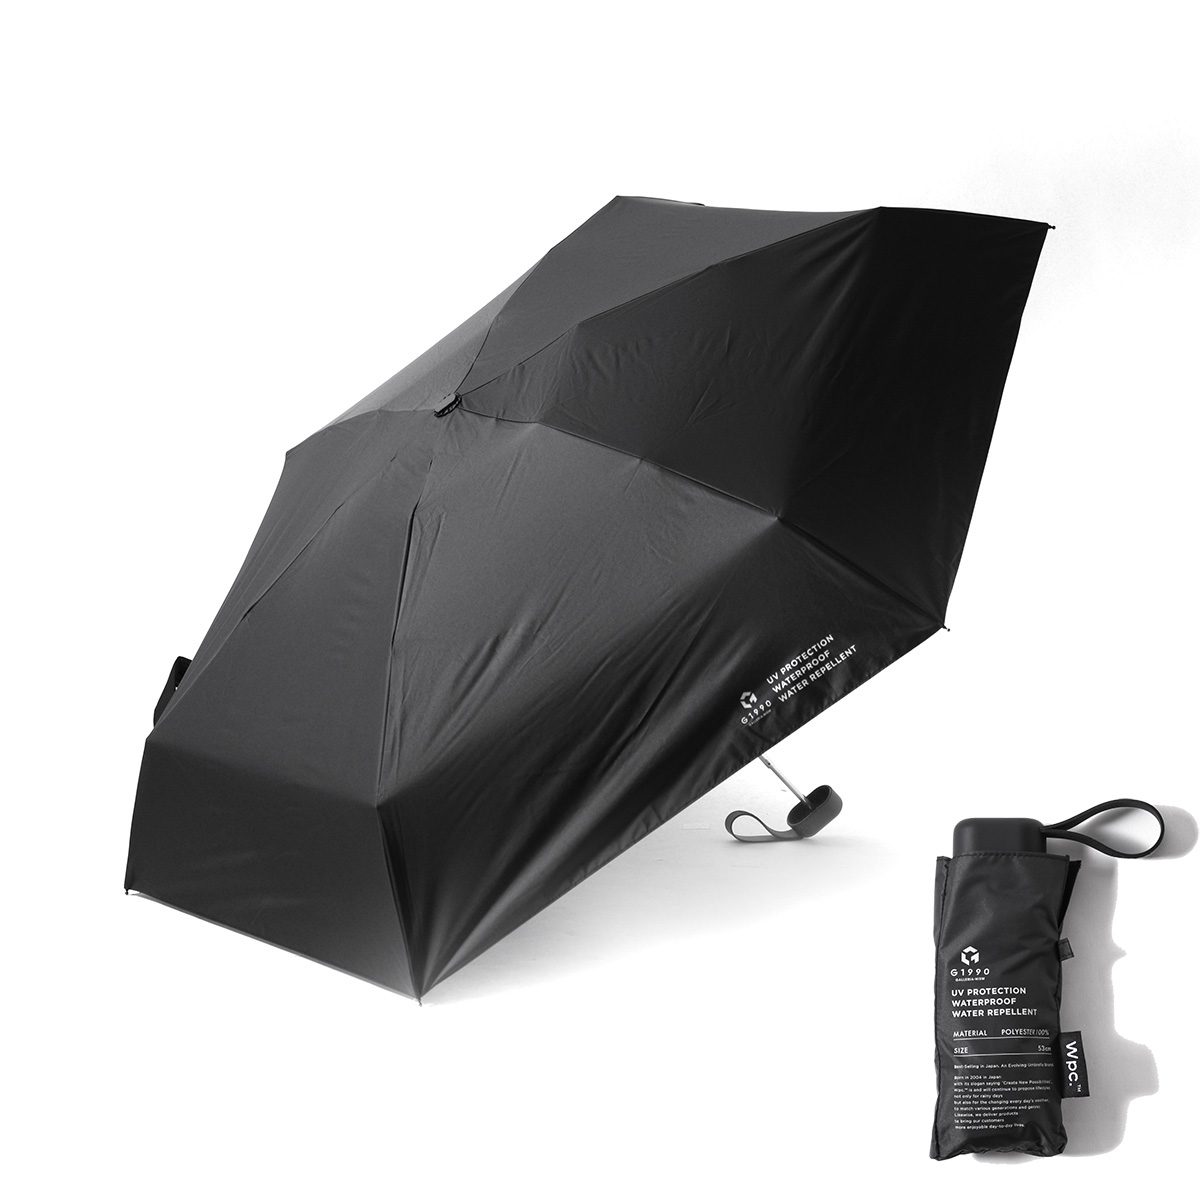 ジーイチキュウキュウゼロ 折りたたみ傘 G1990 Wpc 傘 日傘 雨傘 折り畳み傘 晴雨兼用 5...